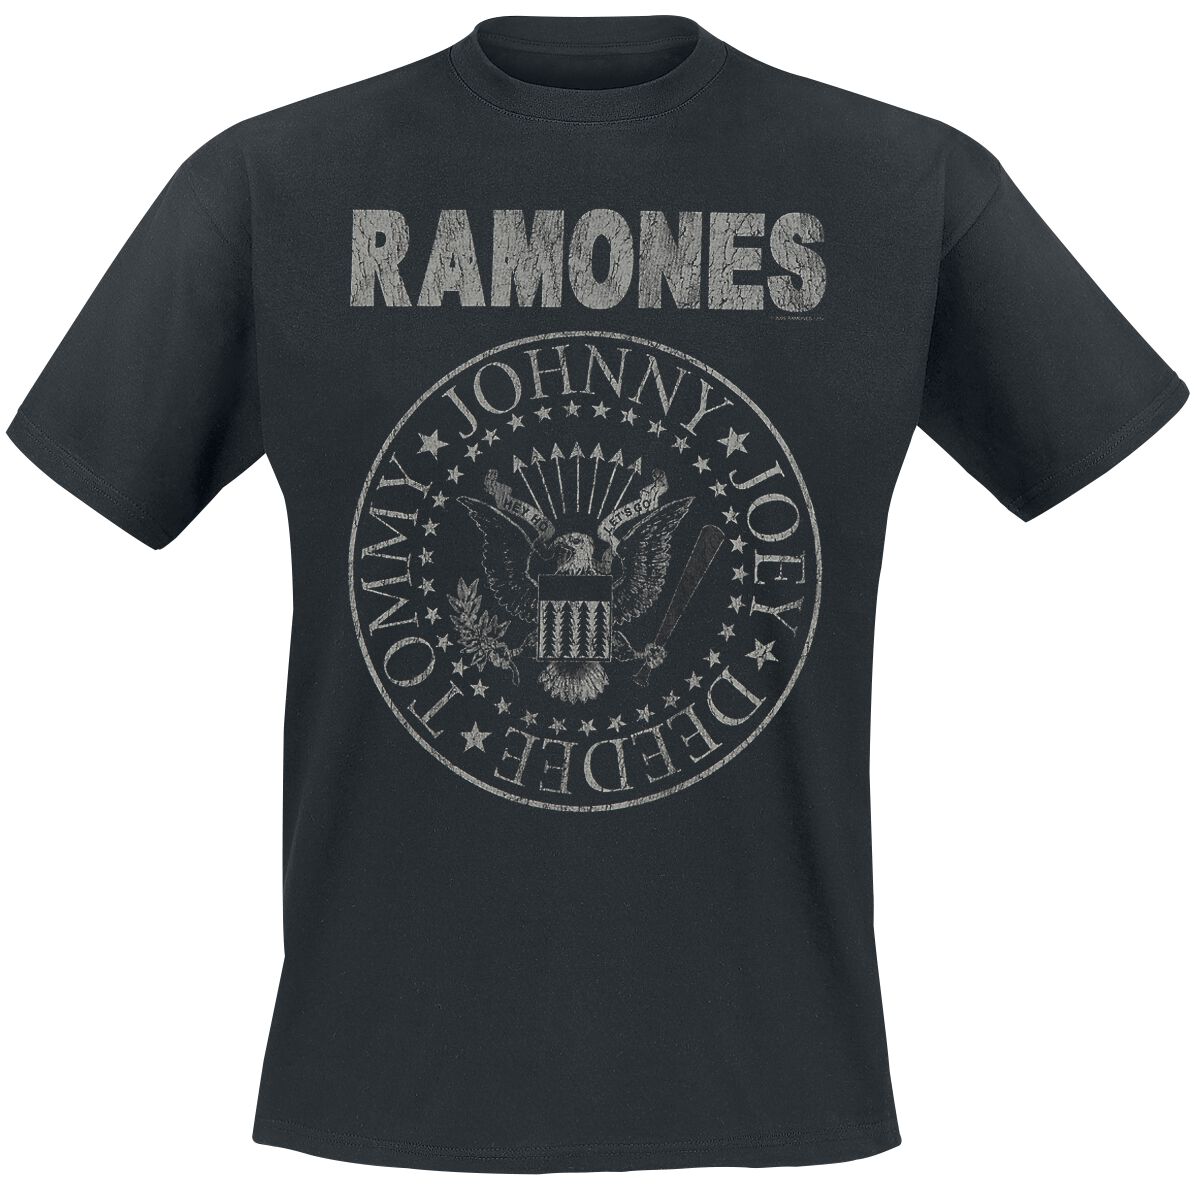 Ramones T-Shirt - Hey Ho Let`s Go - Vintage - S bis 5XL - für Männer - Größe 3XL - schwarz  - Lizenziertes Merchandise!